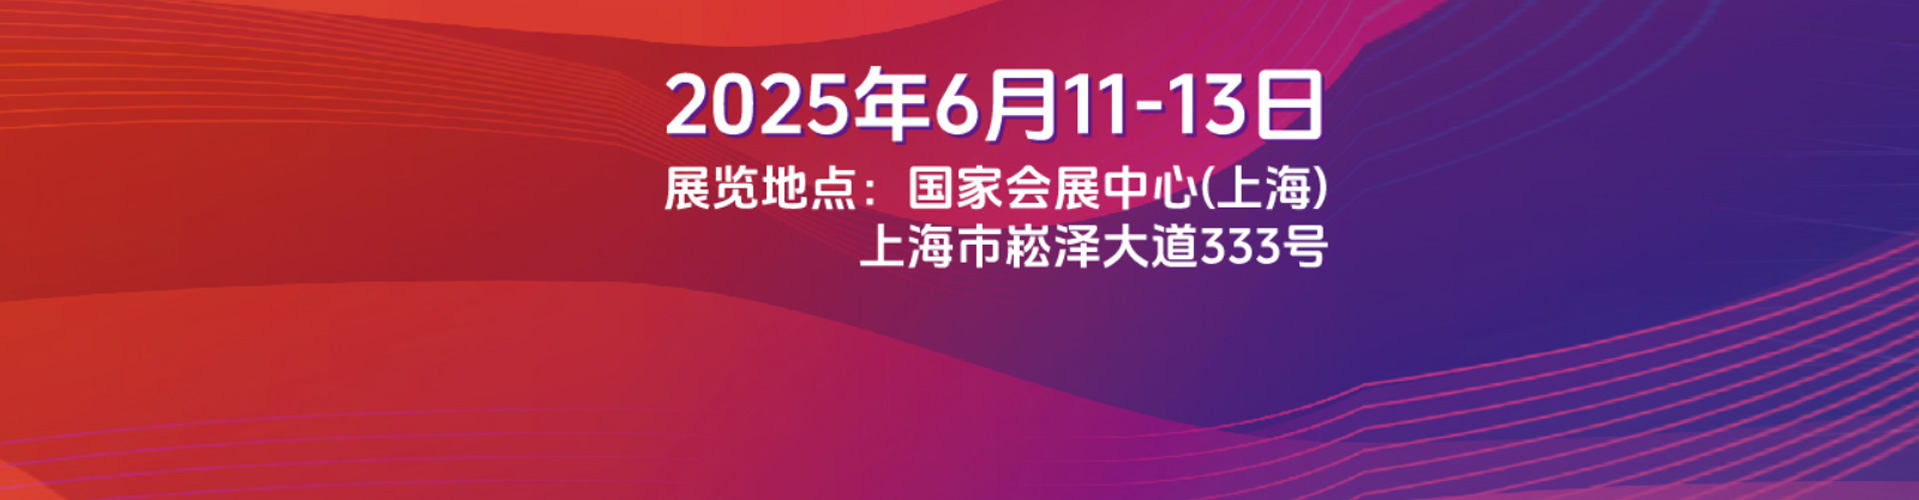 上海光伏展2023-5月24-26日-【参展须知】-*十六届SNEC国际光伏+储能展览会